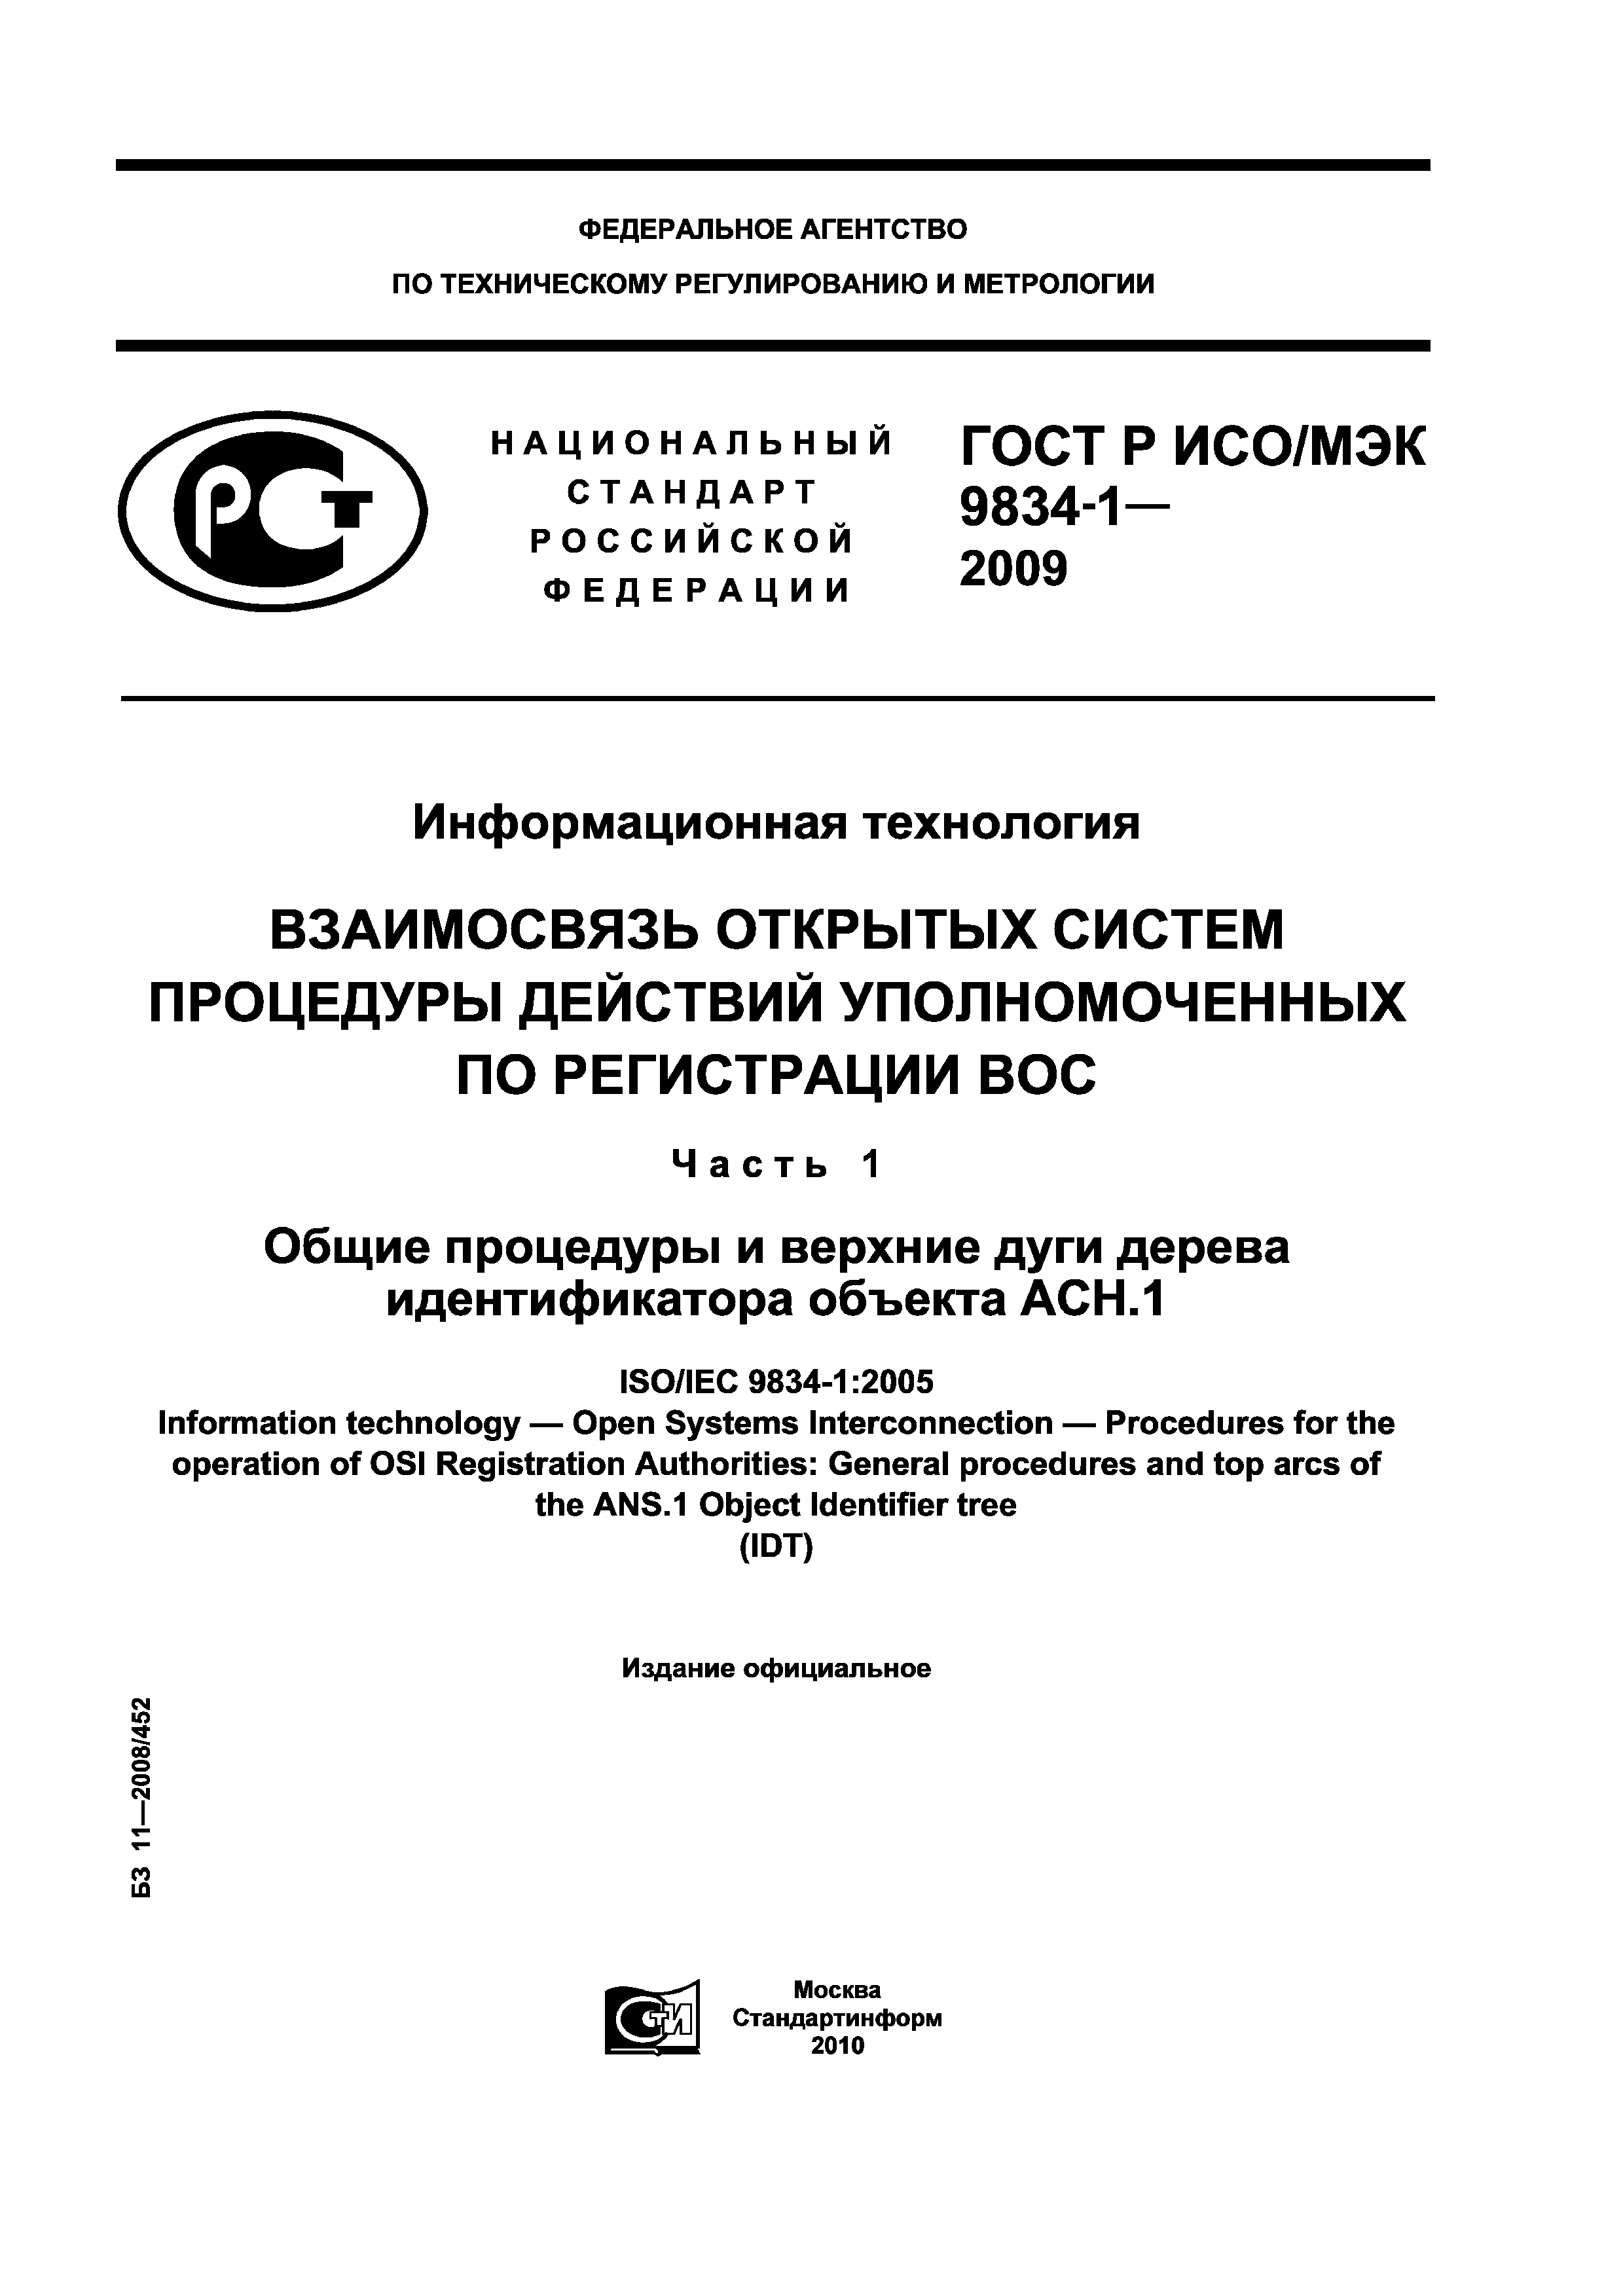 ГОСТ Р ИСО/МЭК 9834-1-2009